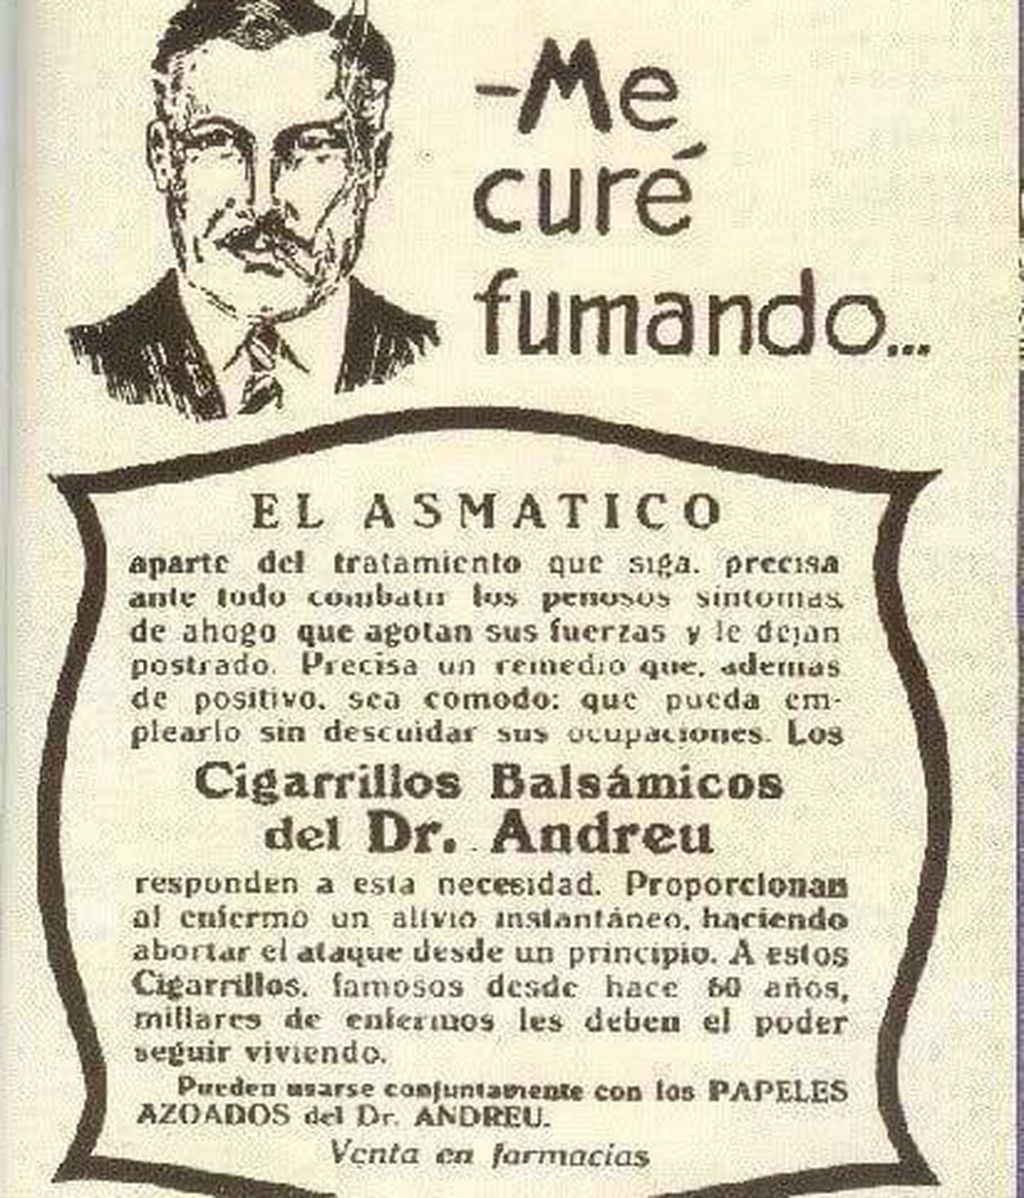 Publicidad vintage: tabaco para el asma, coñac para conducir - Uppesrs